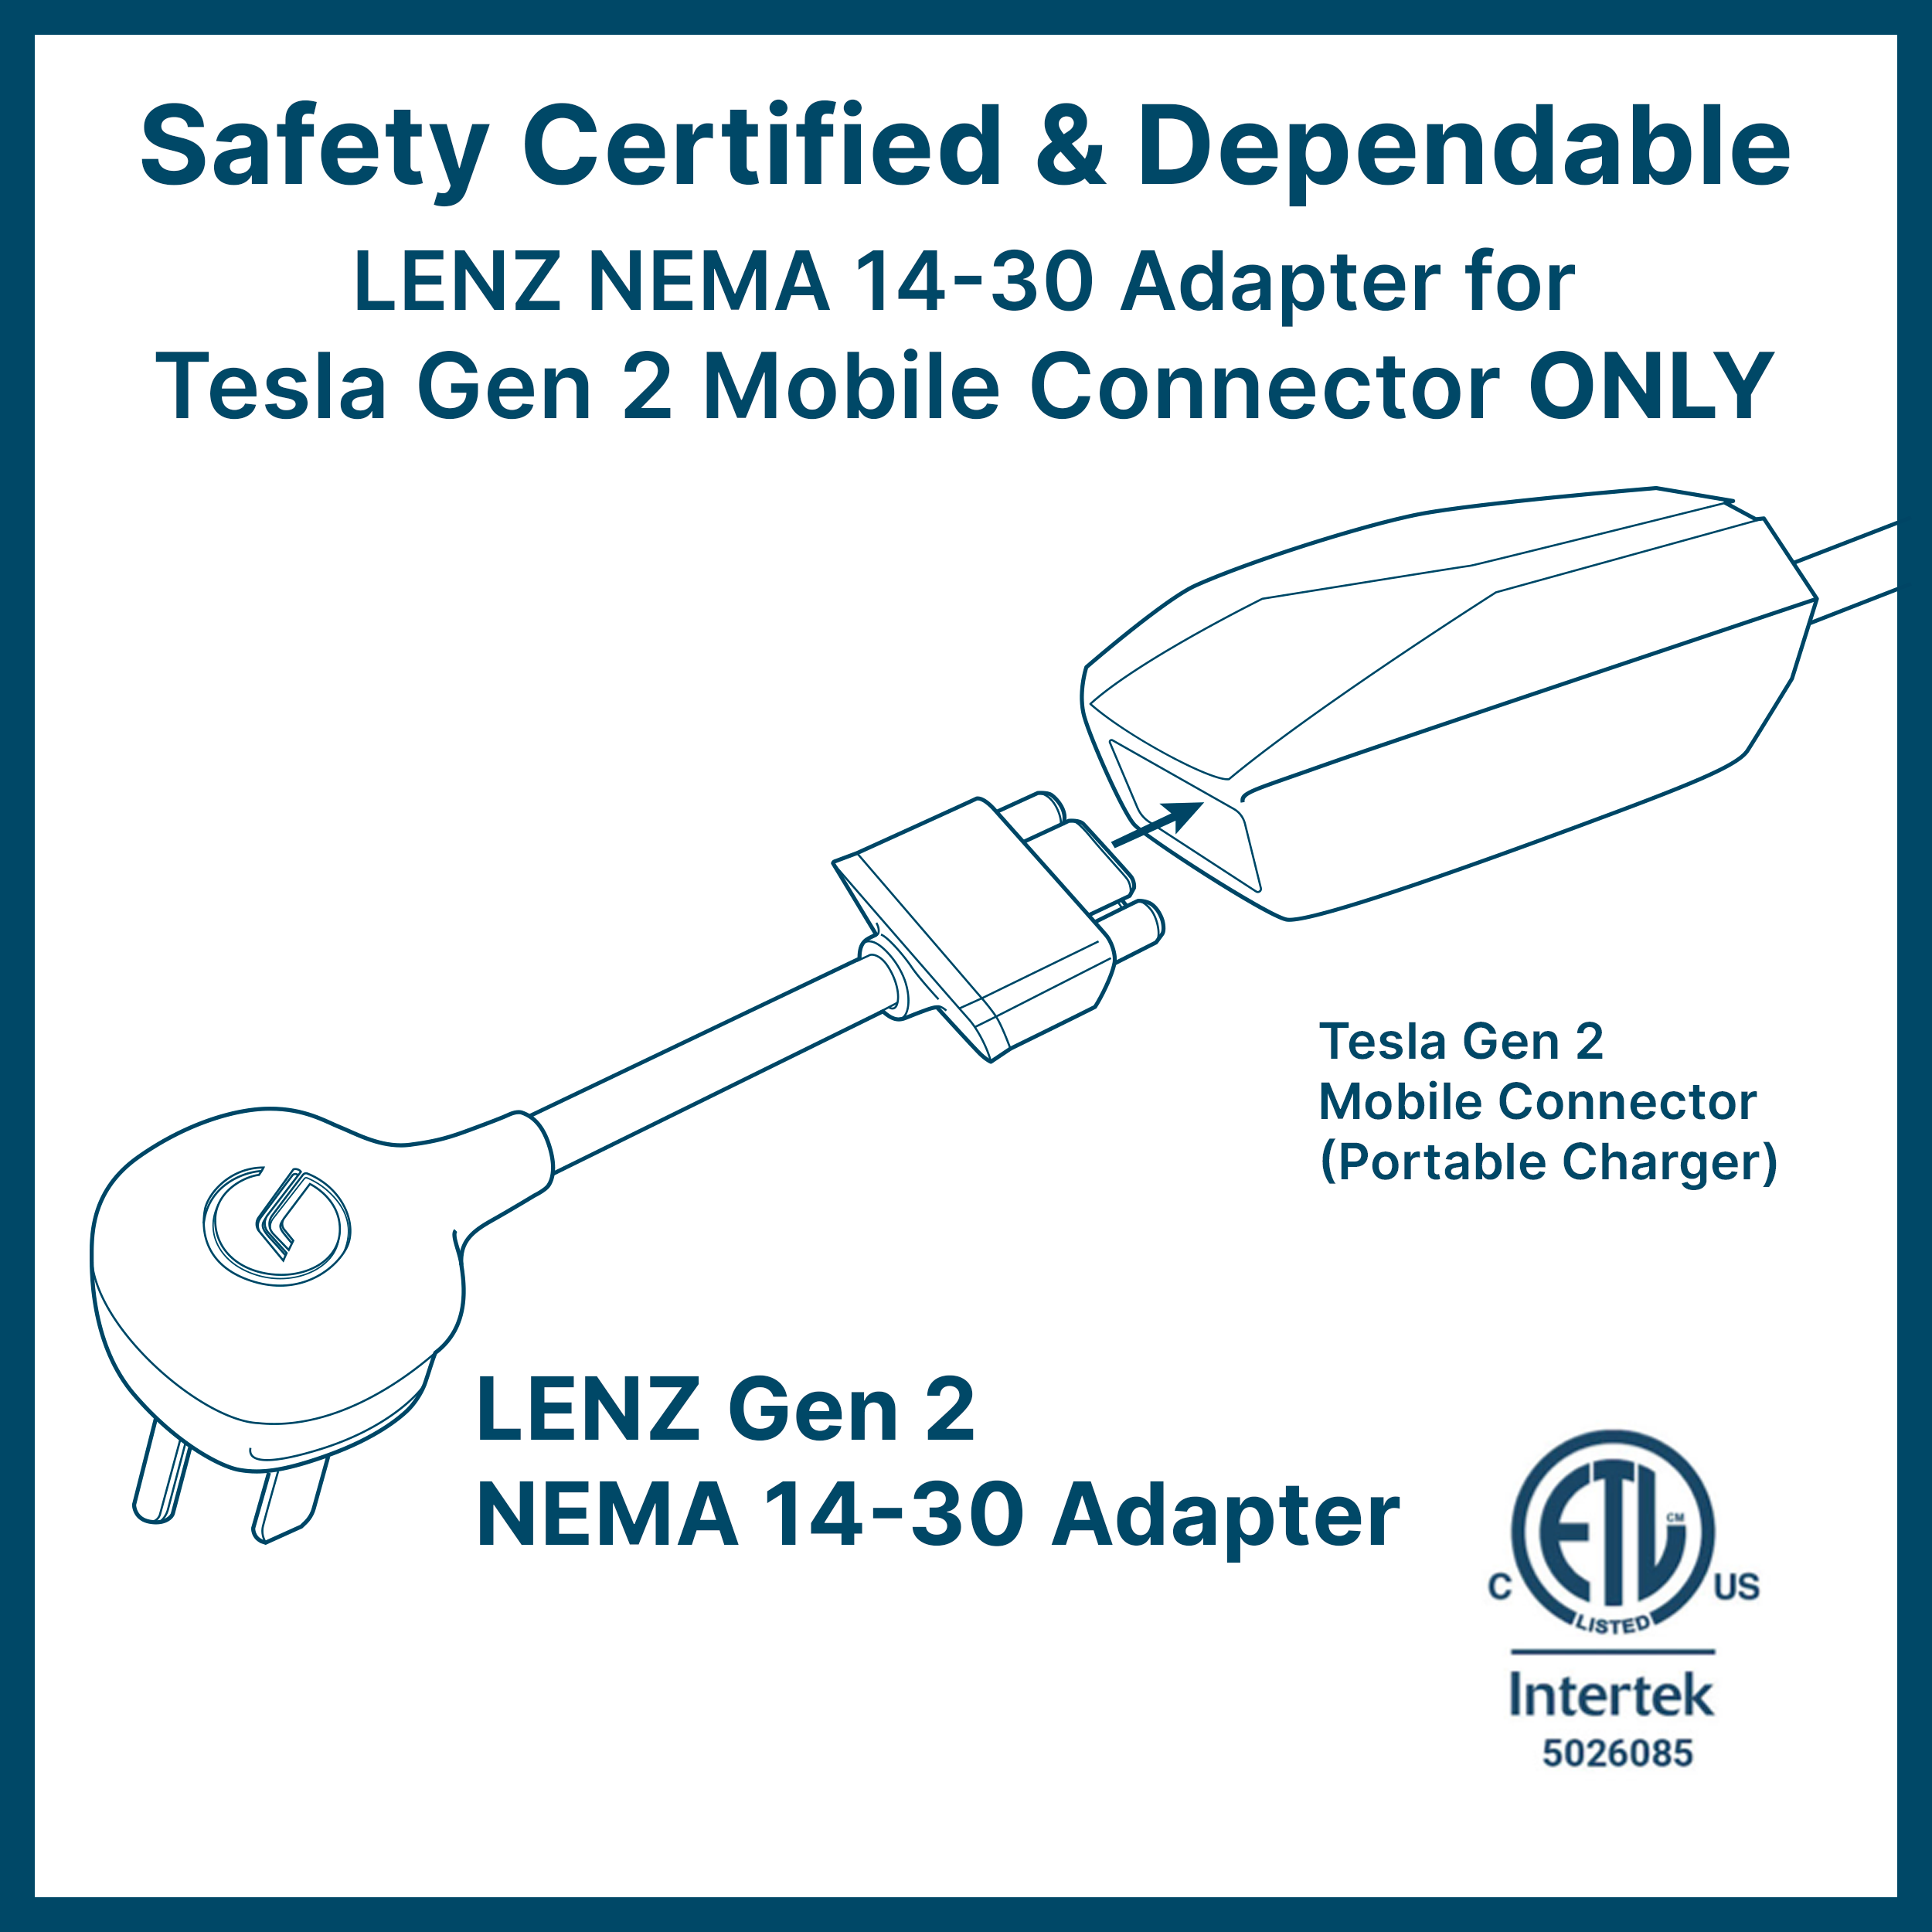 NEMA 14-30 Tesla Mobile Connector Gen 2 Adapter